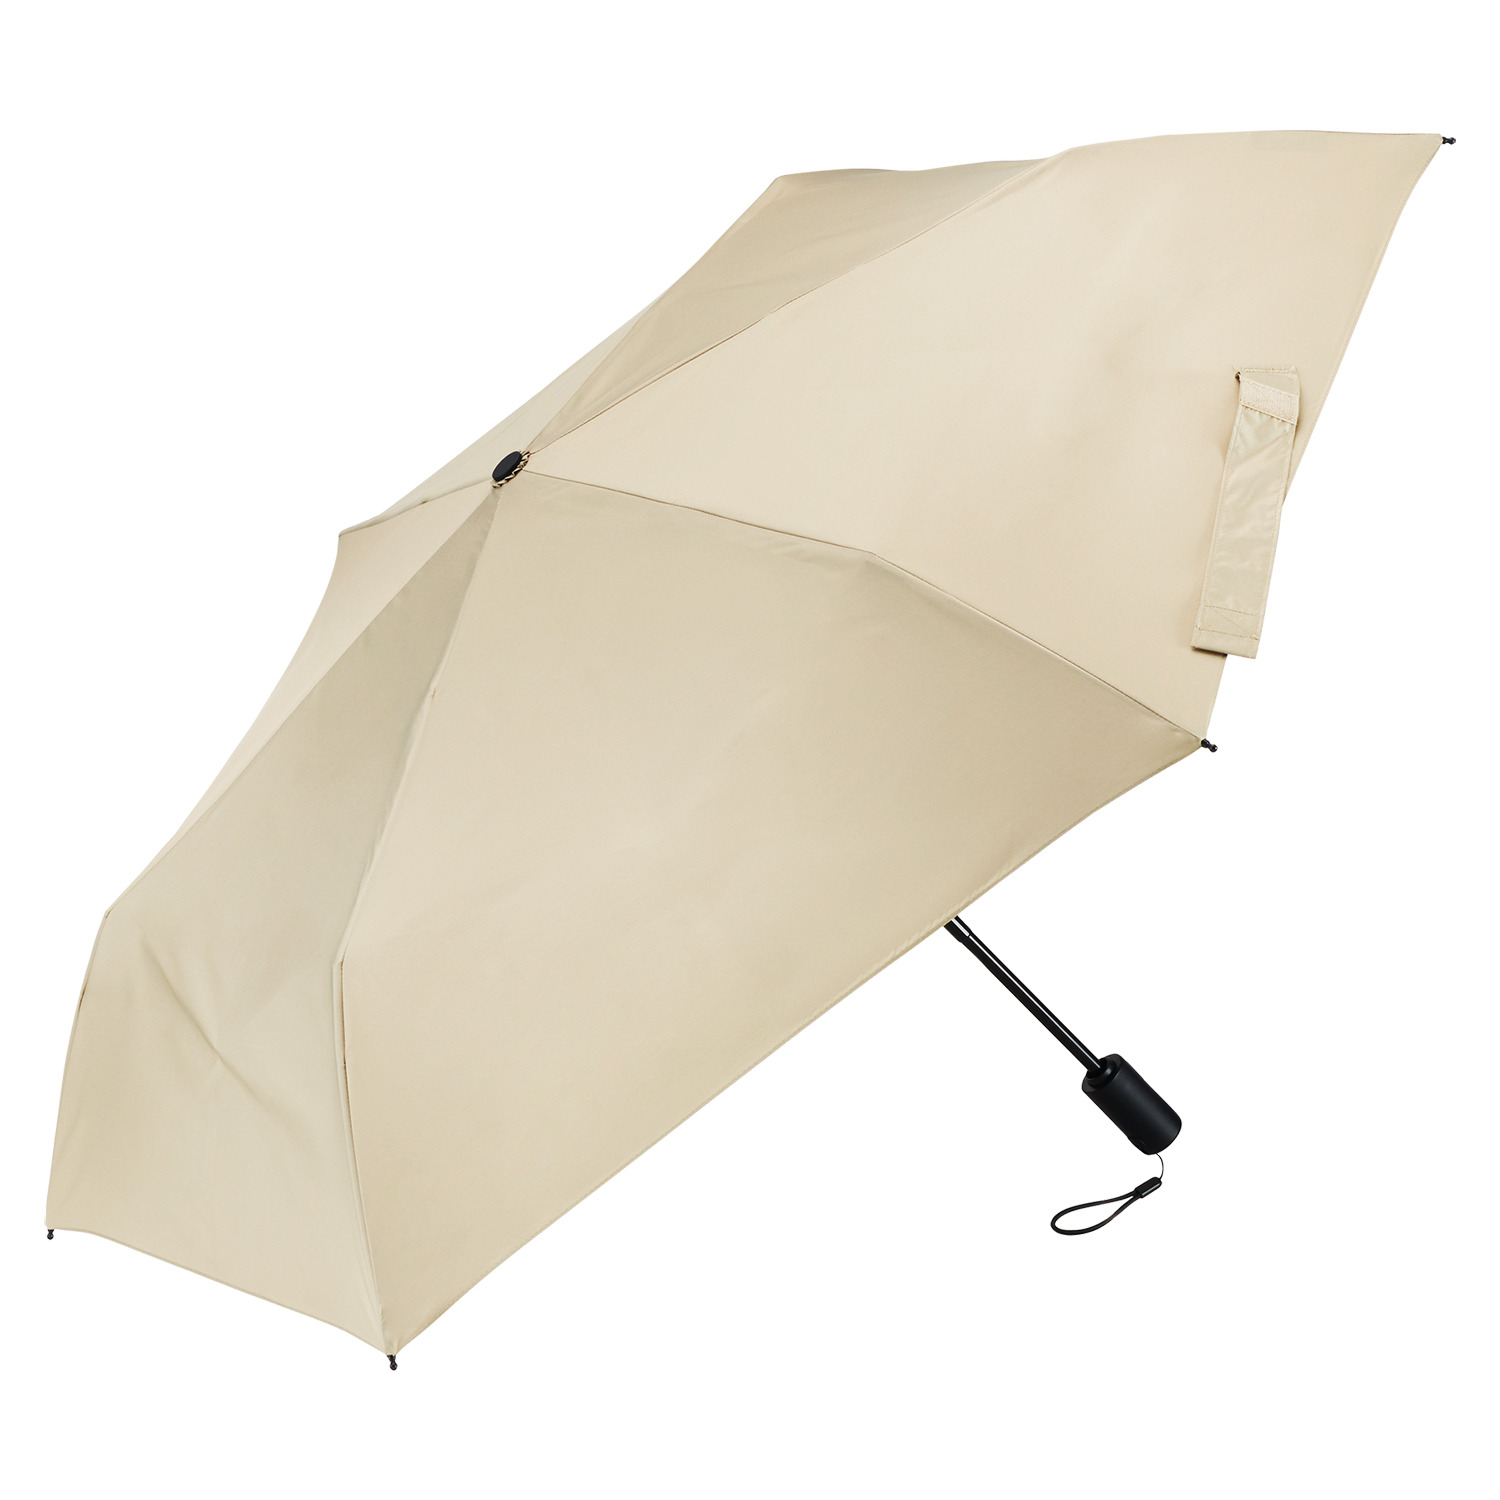 ウォーターフロント “クイックシャット” 自動開閉折りたたみ傘